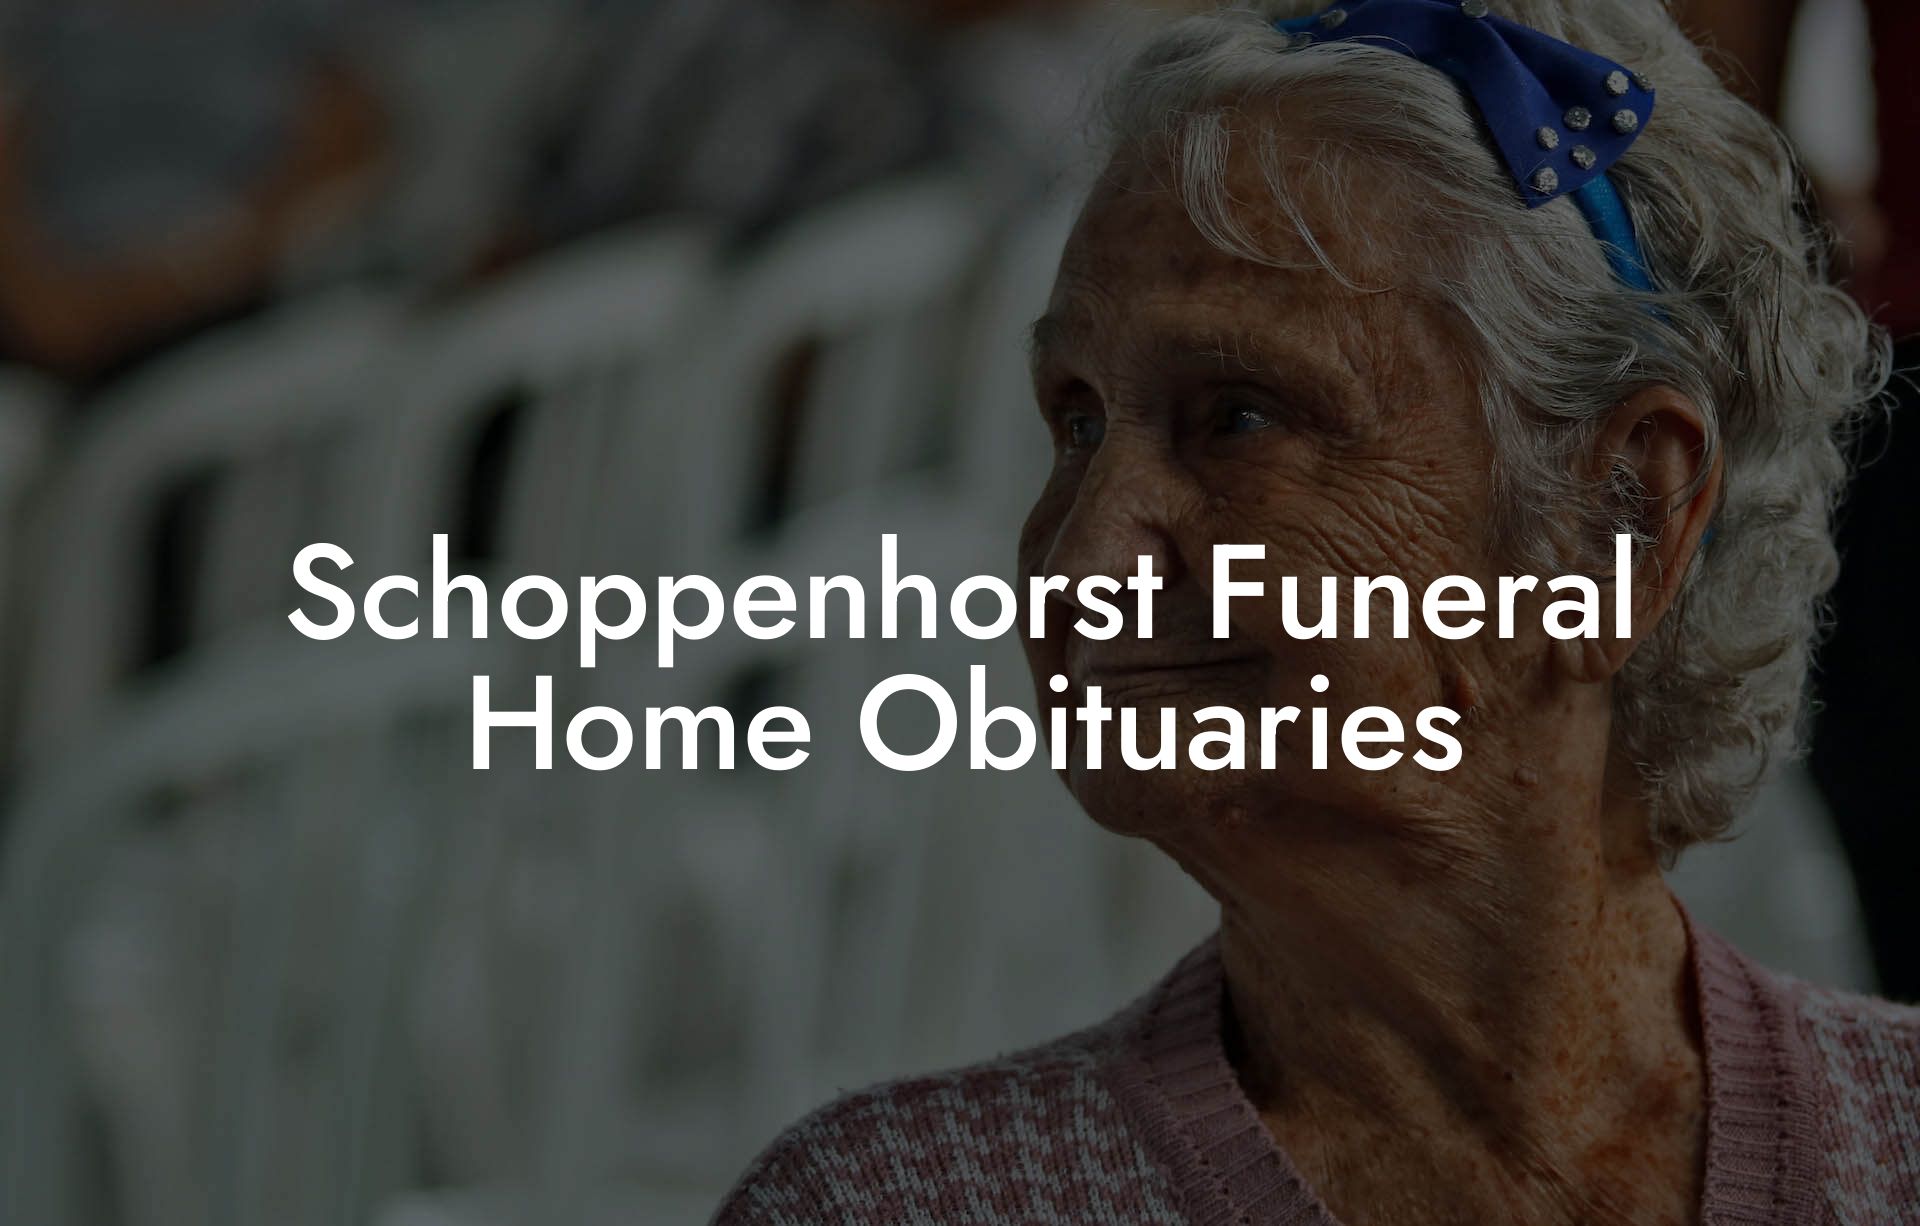 Schoppenhorst Funeral Home Obituaries